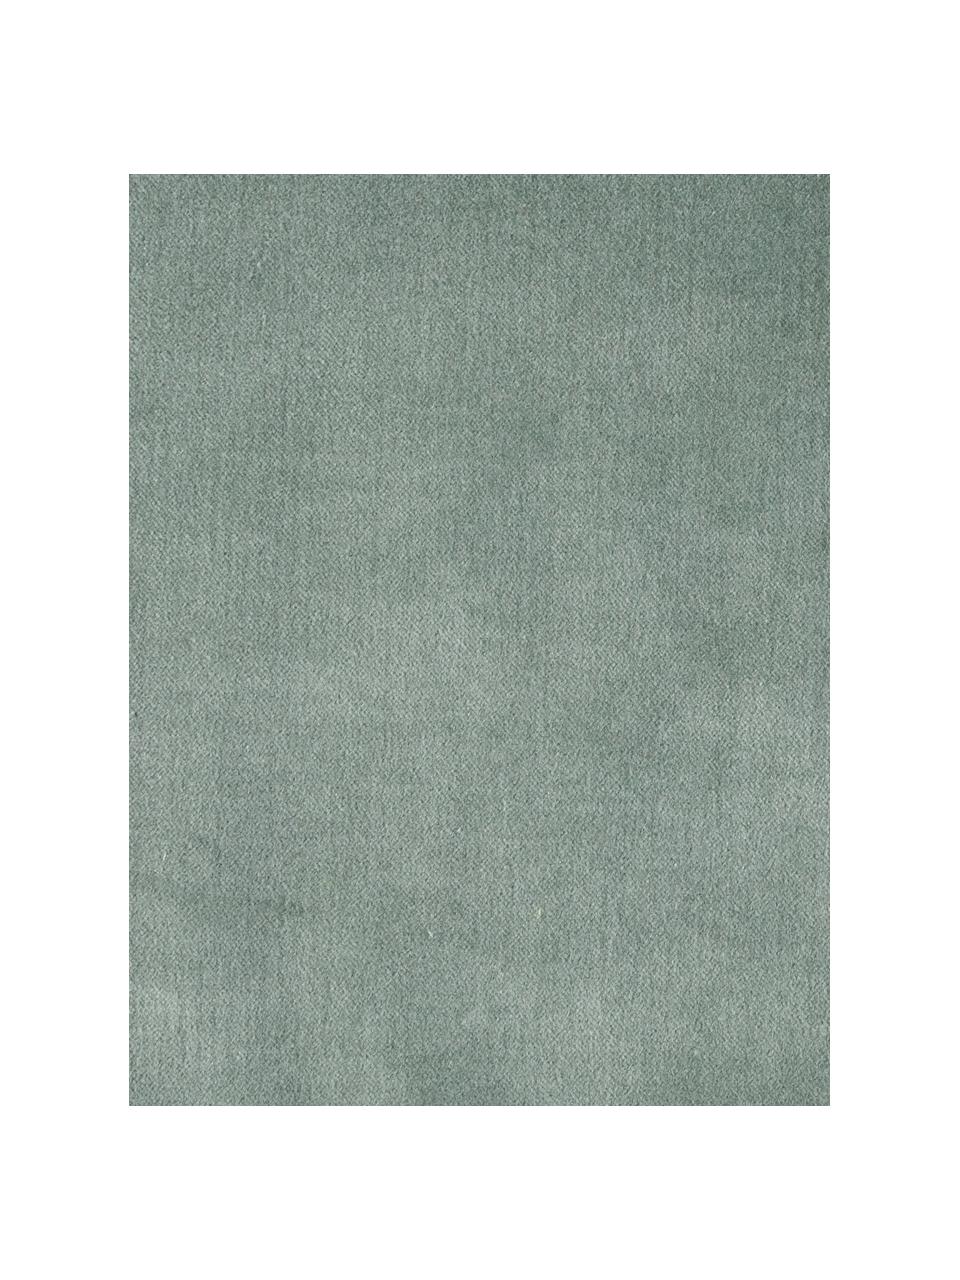 Samt-Kissenhülle Phoeby in Salbeigrün mit Fransen, 100% Baumwolle, Salbeigrün, B 40 x L 40 cm